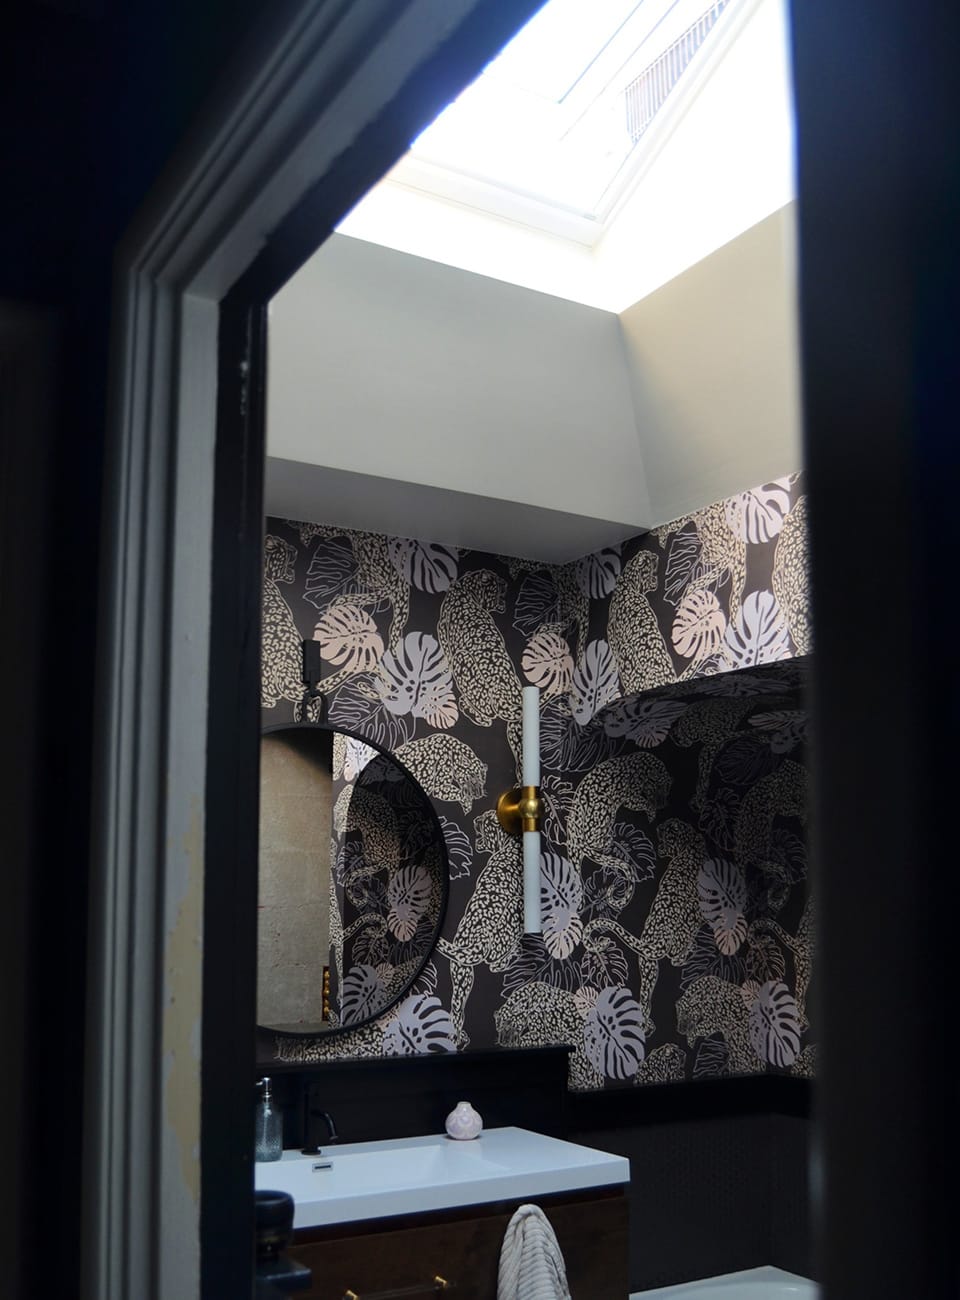 Bathroom-skylight-open-doorway.jpg#asset:4208